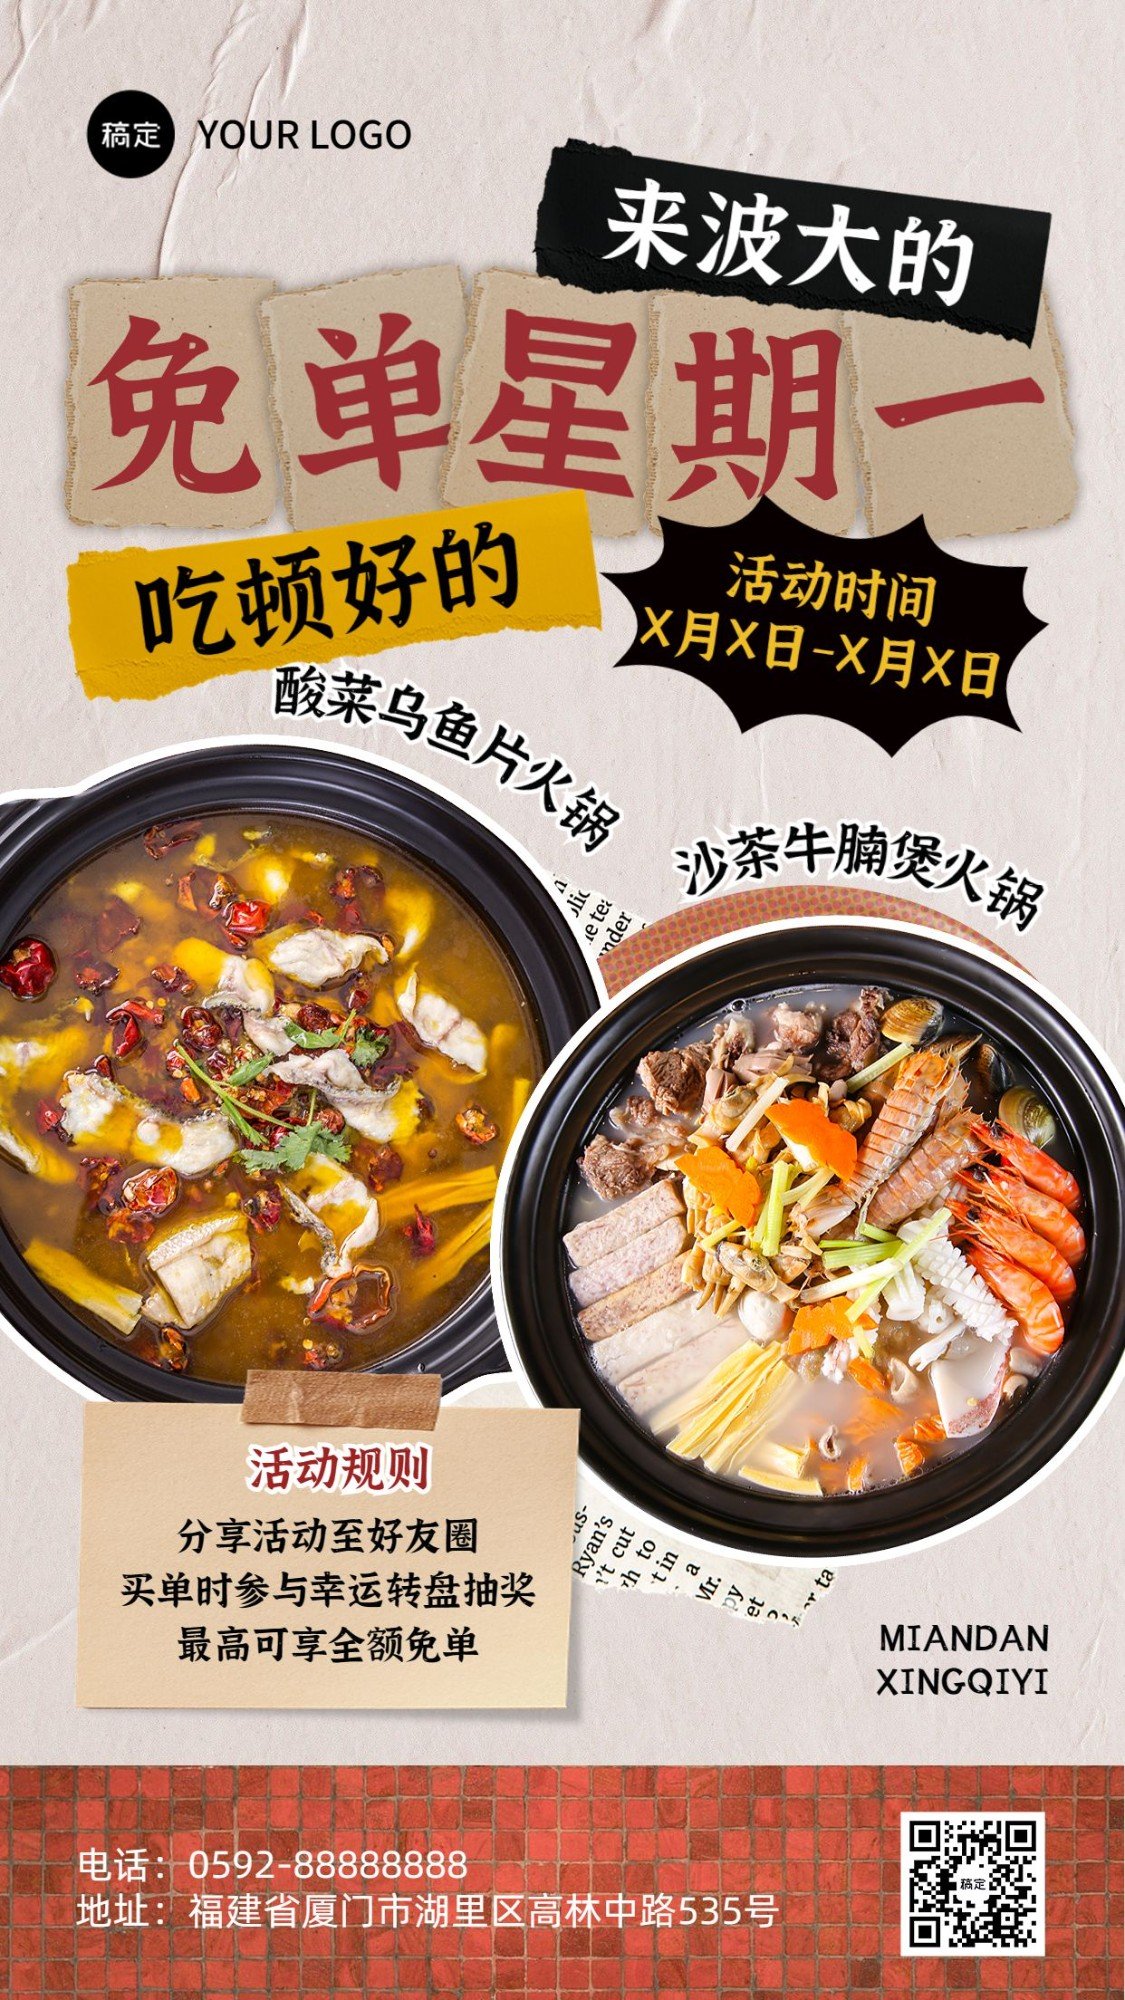 餐饮美食品牌宣传火锅烤肉周主题活动营销全屏竖版海报预览效果